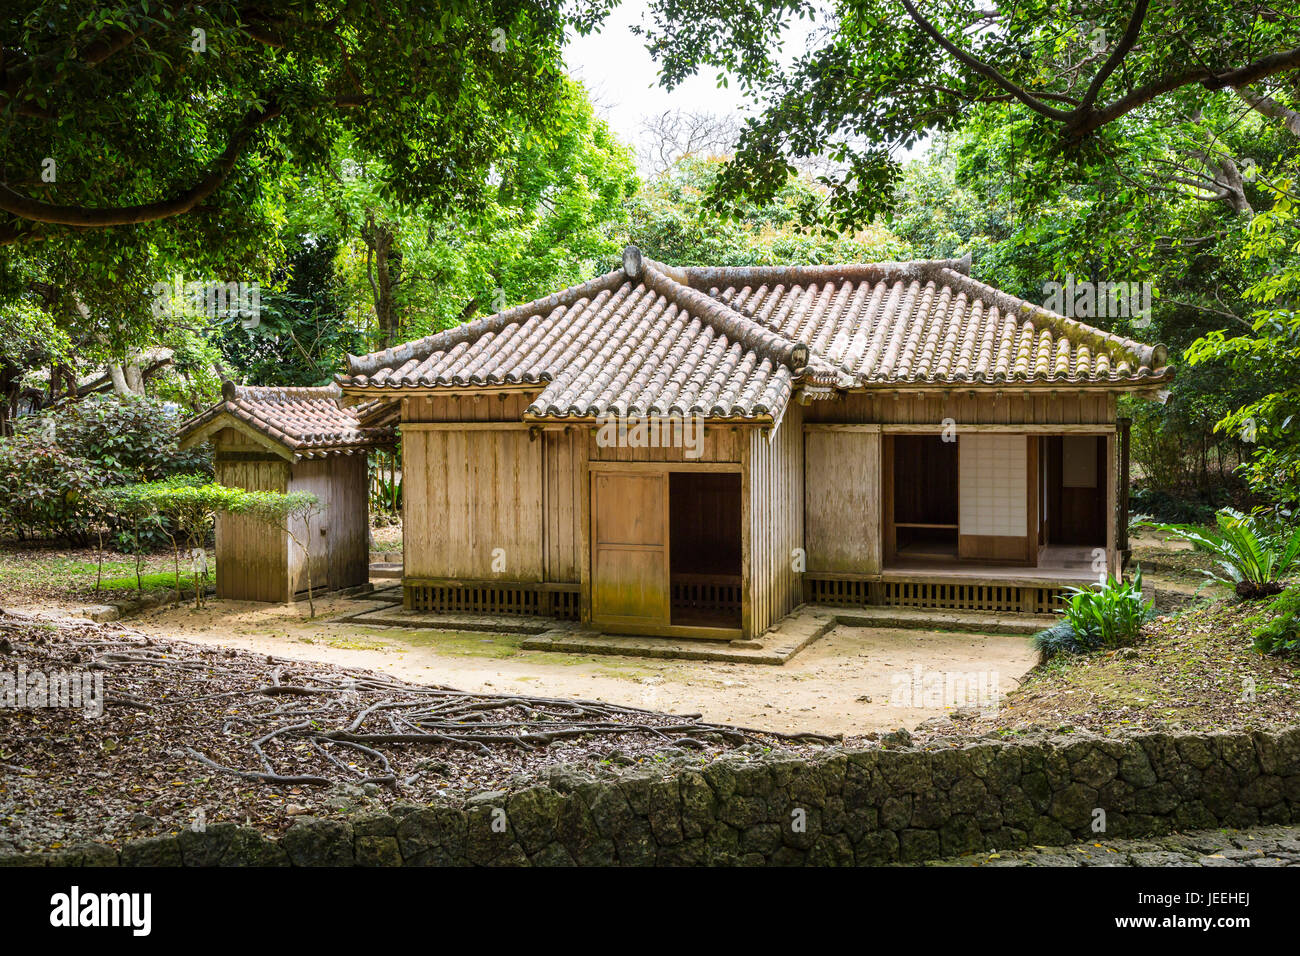 Les jardins de Shikinaen, une ancienne résidence royale sont situés sur une petite colline au sud de Château Shuri à Naha, Okinawa, Japon. Banque D'Images